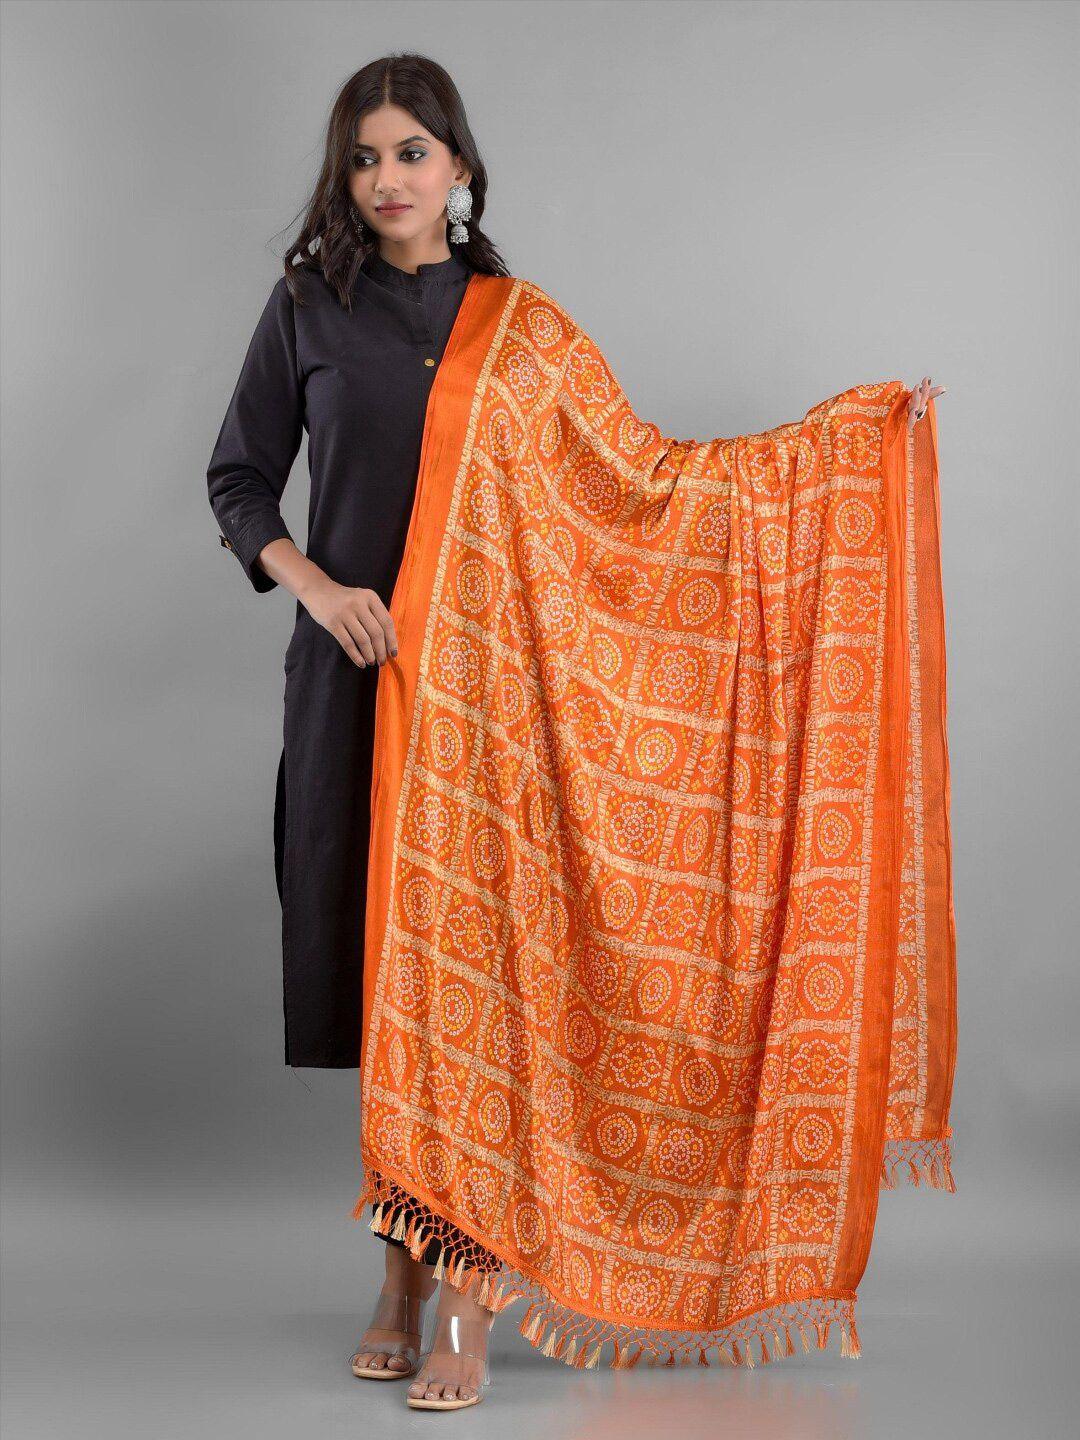 apratim-women's-orange-&-white-printed-bandhani-dupatta